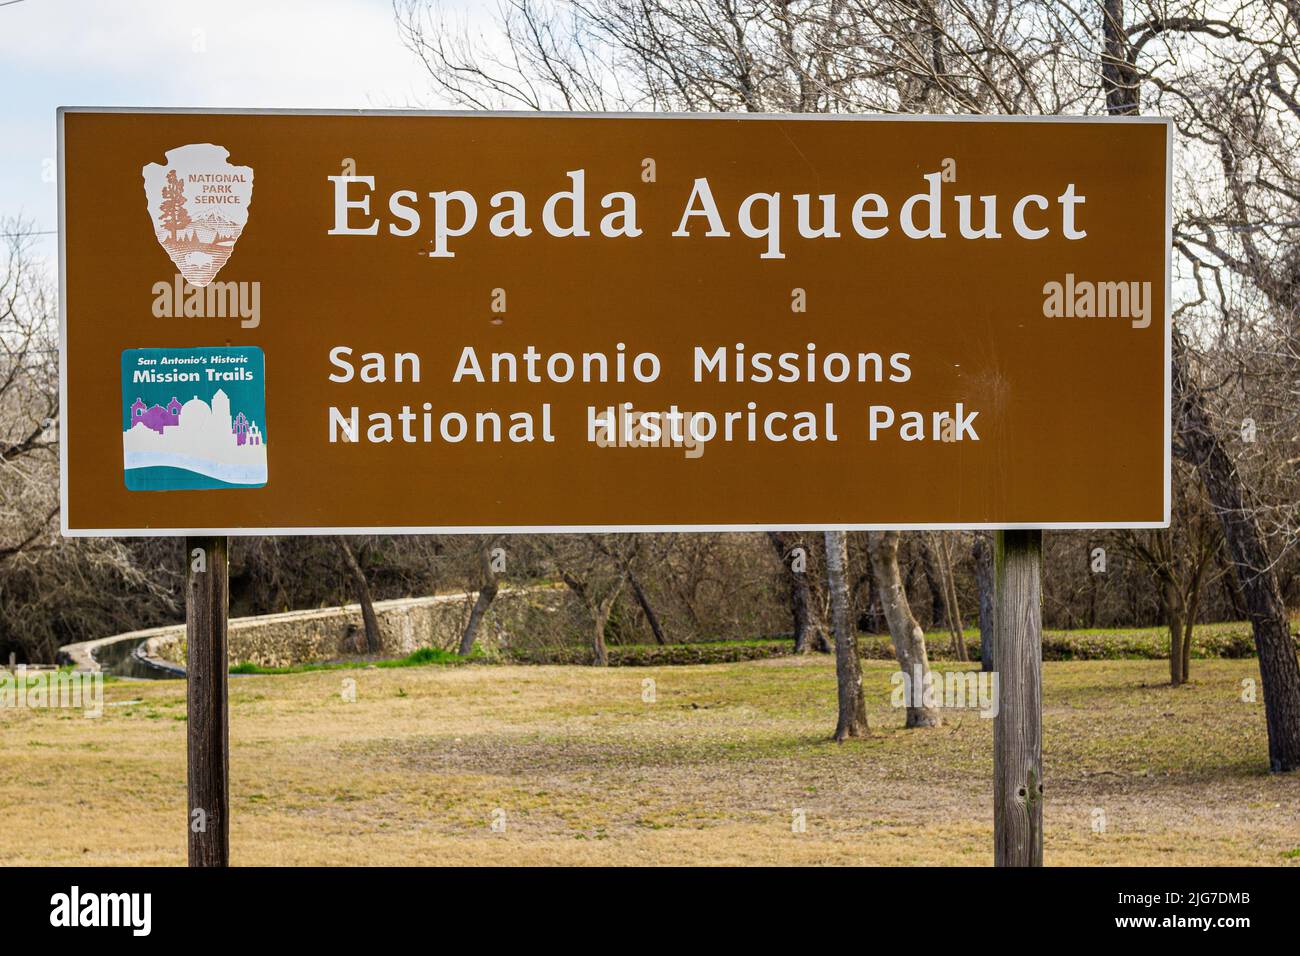 El letrero del Servicio del Parque Nacional Brown está colocado en el Acueducto Espada, parte del Parque Histórico Nacional Misiones de San Antonio en Texas. Foto de stock